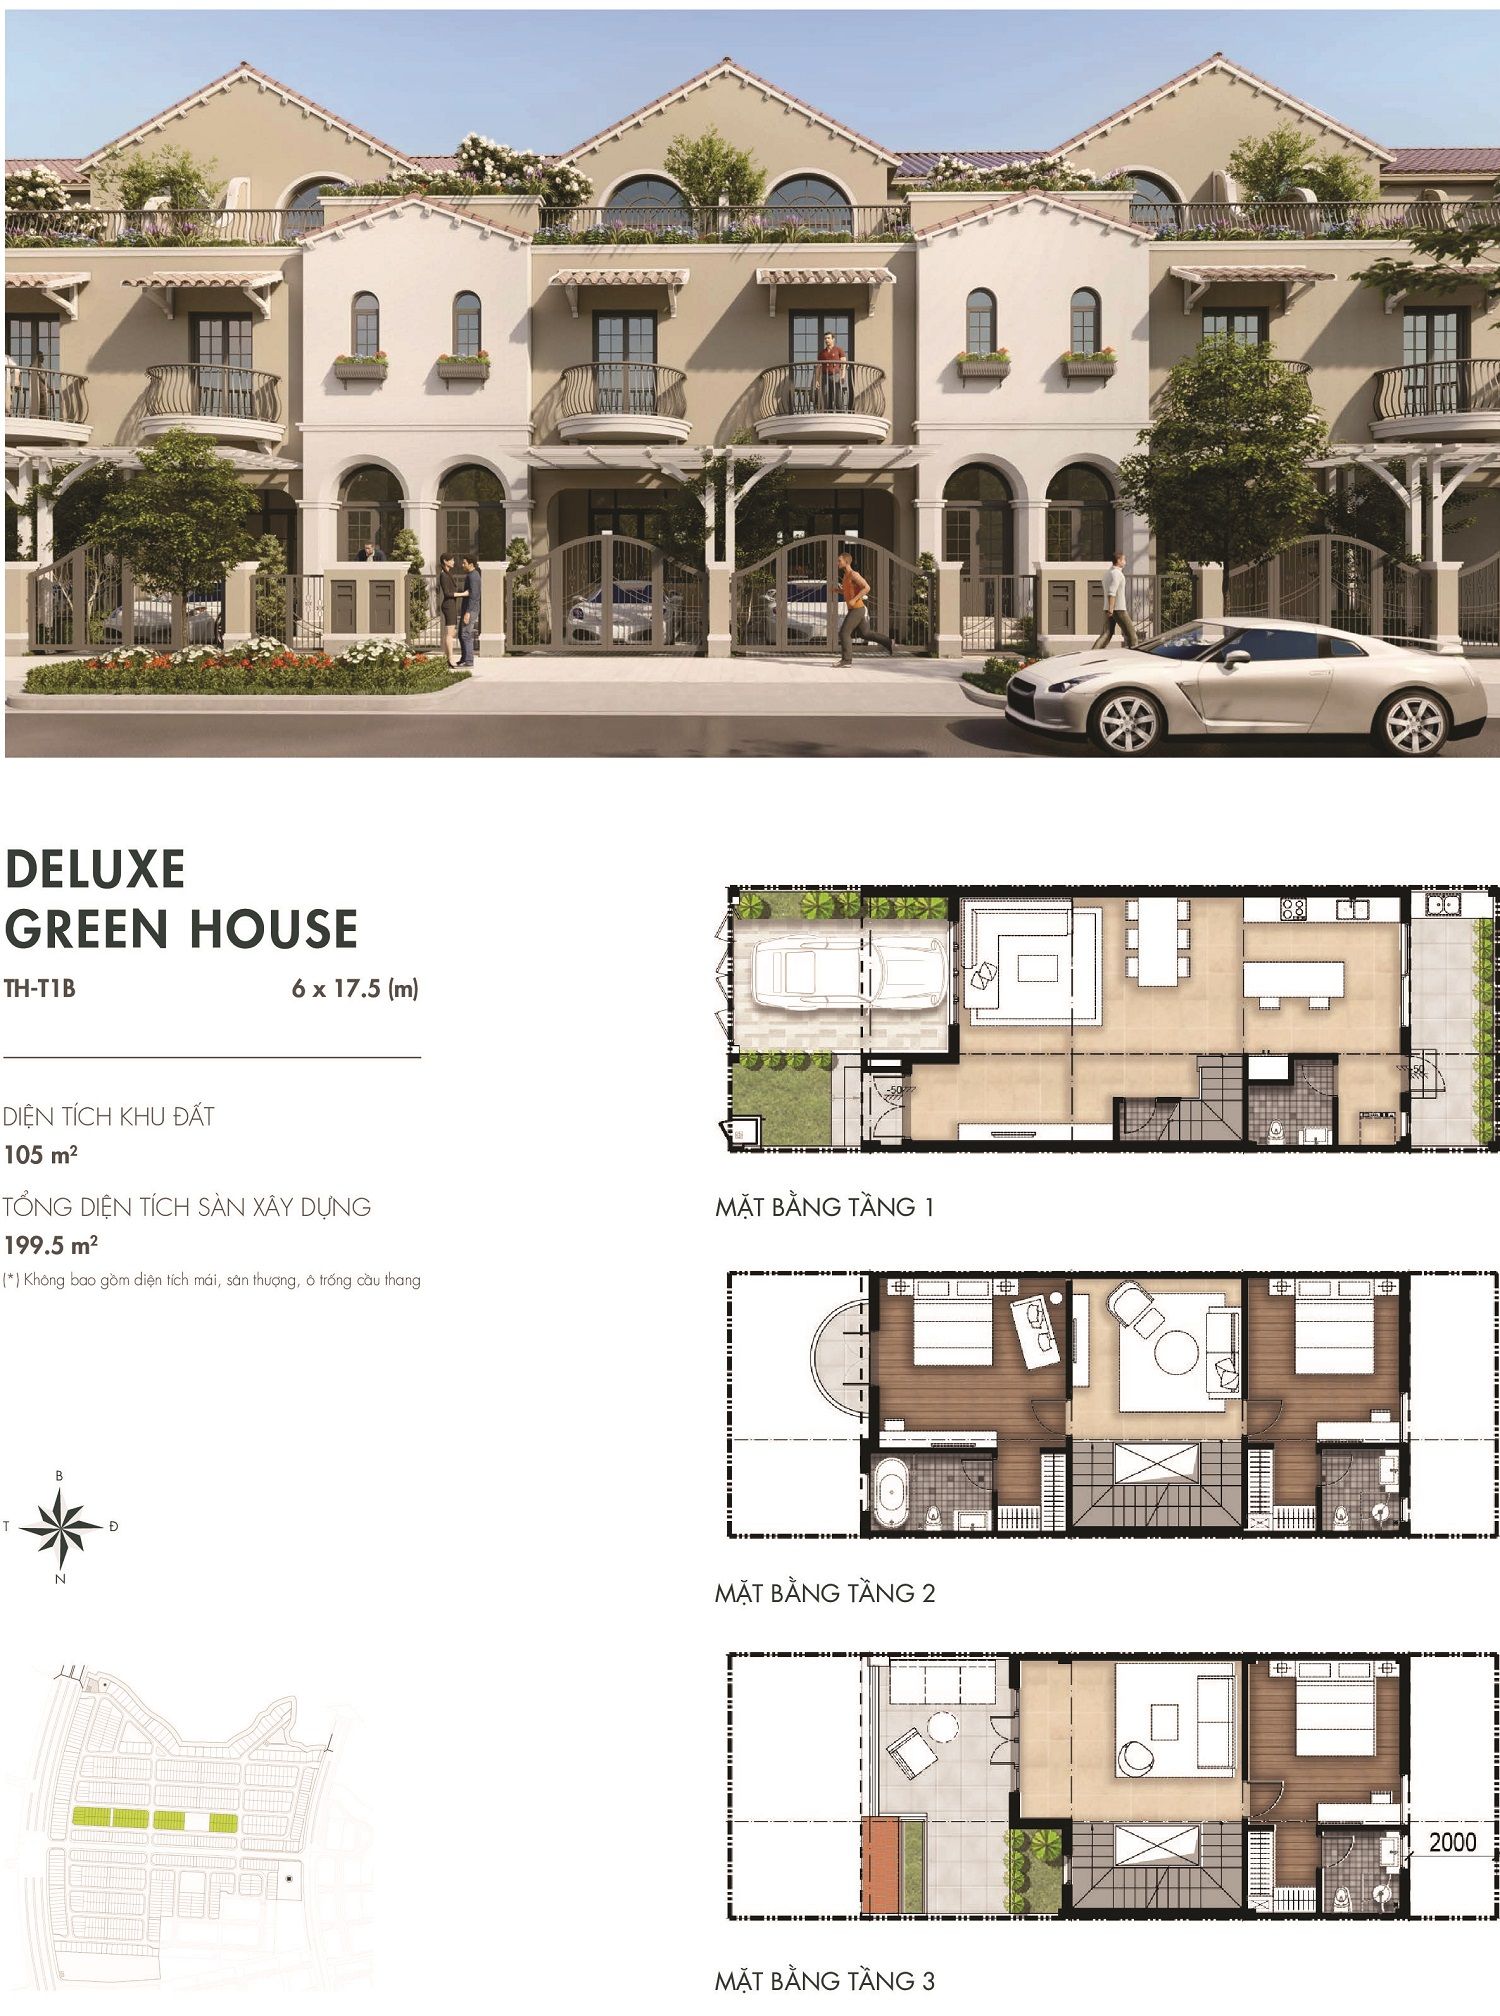 deluxe-green-house-6x17-5-river-park-1-aqua-city